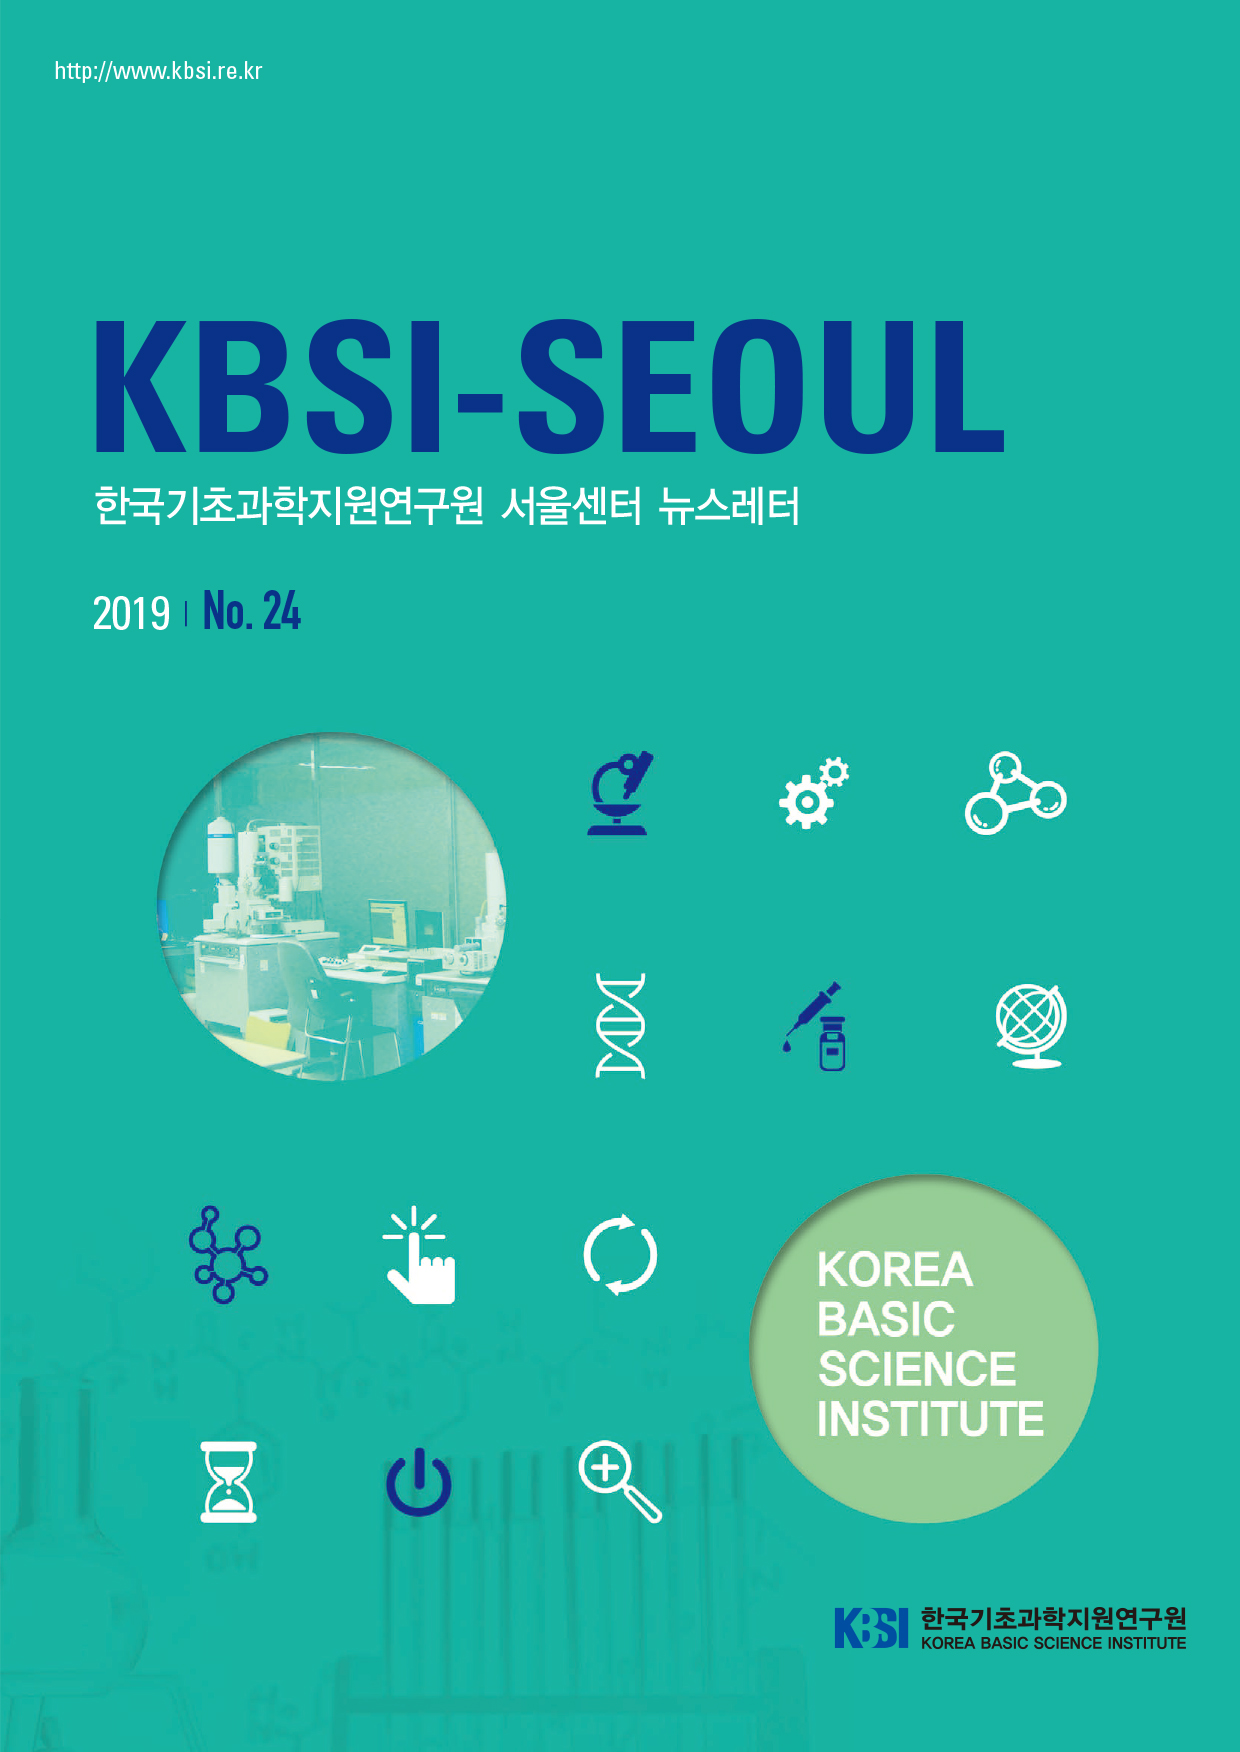 http://www.kbsi.re.kr KBSI-SEOUL 한국기초과학지원연구원 서울센터 뉴스레터 2019 No.24 KOREA BASIC SCIENCE INSTITUTE 한국기초과학지원연구원 자세한 내용은 첨부파일을 참조하세요.